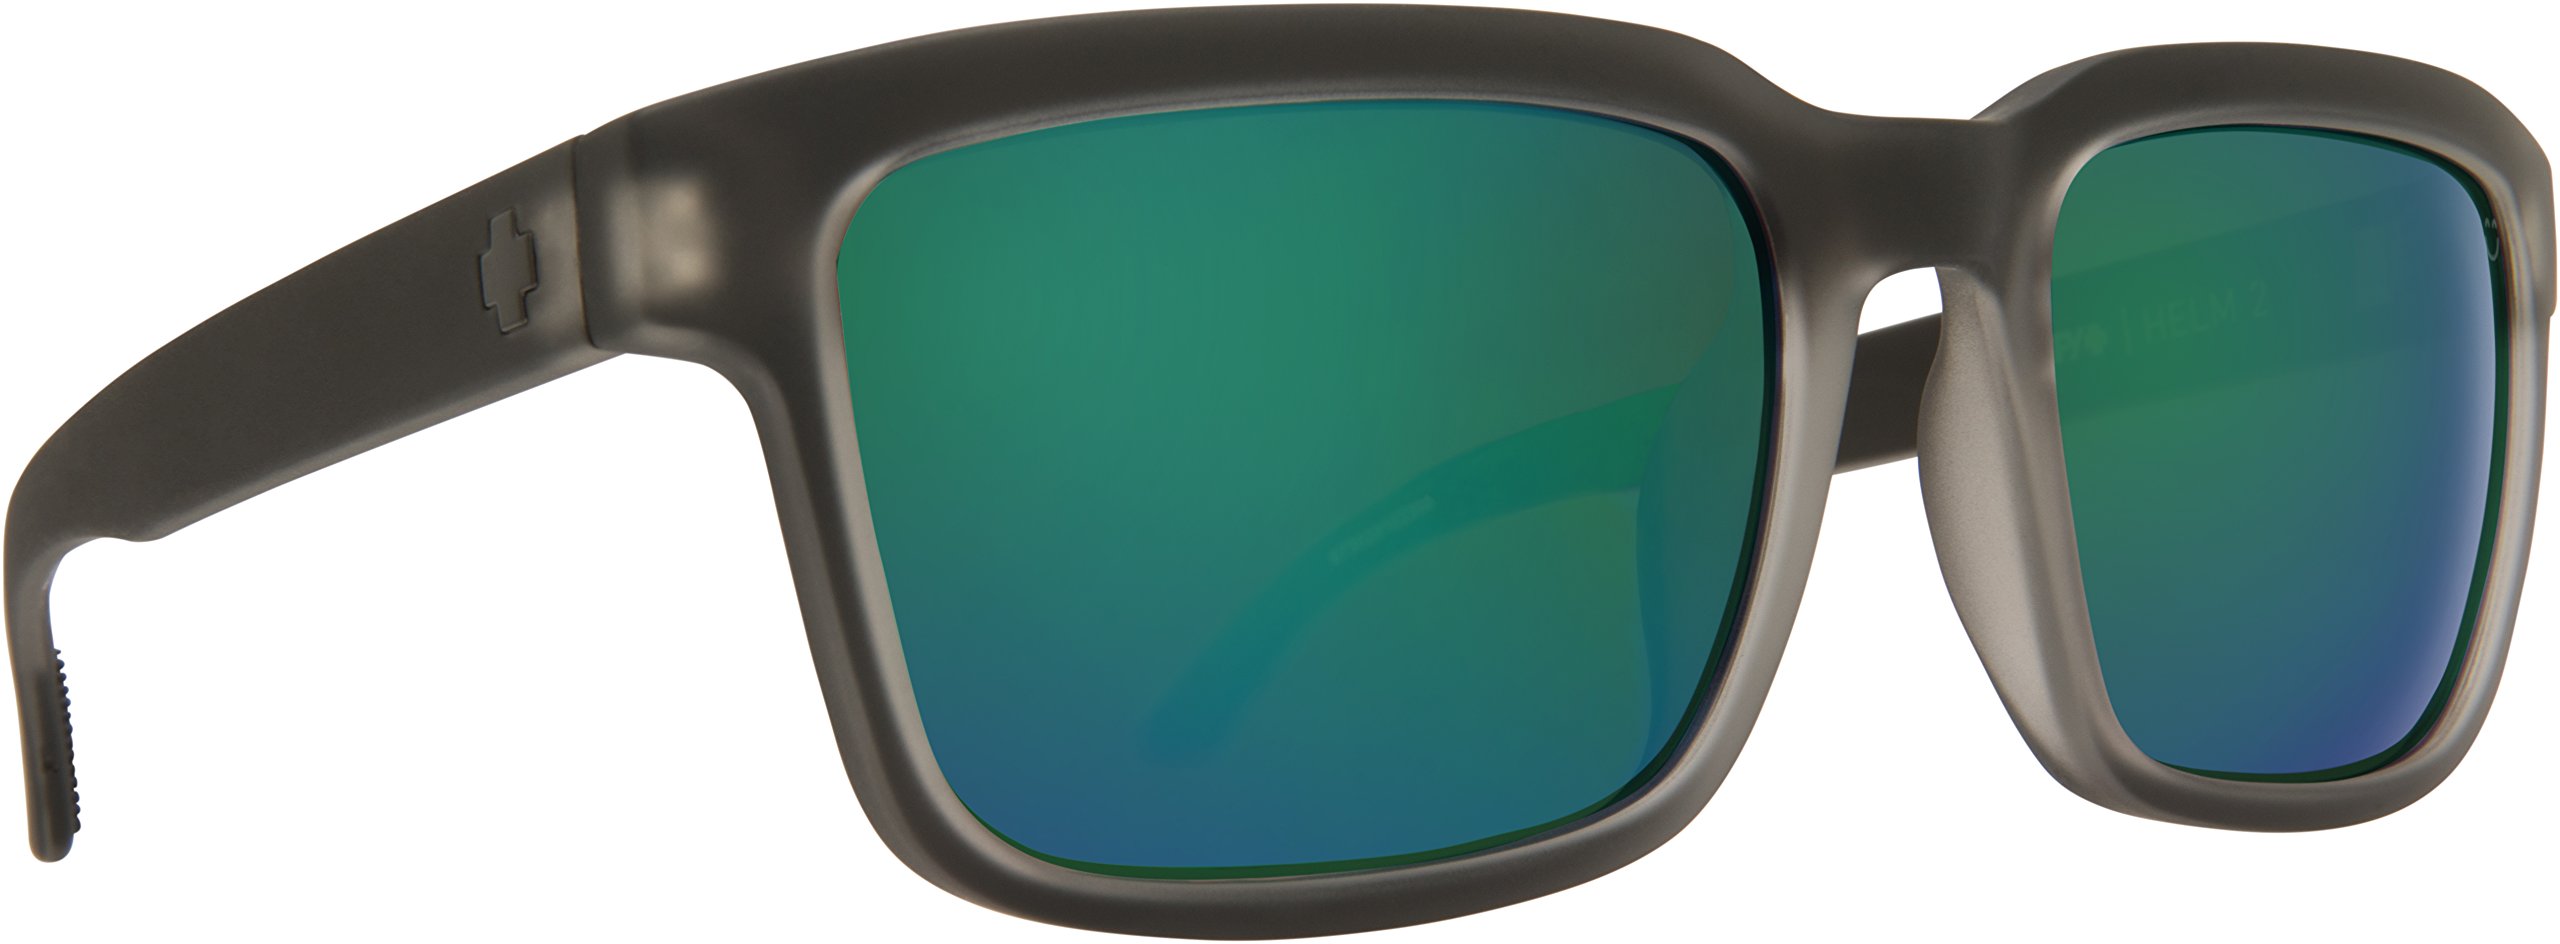 Spy Unisex Helm 2 Sonnenbrille, Matte Black Ice, Talla Única